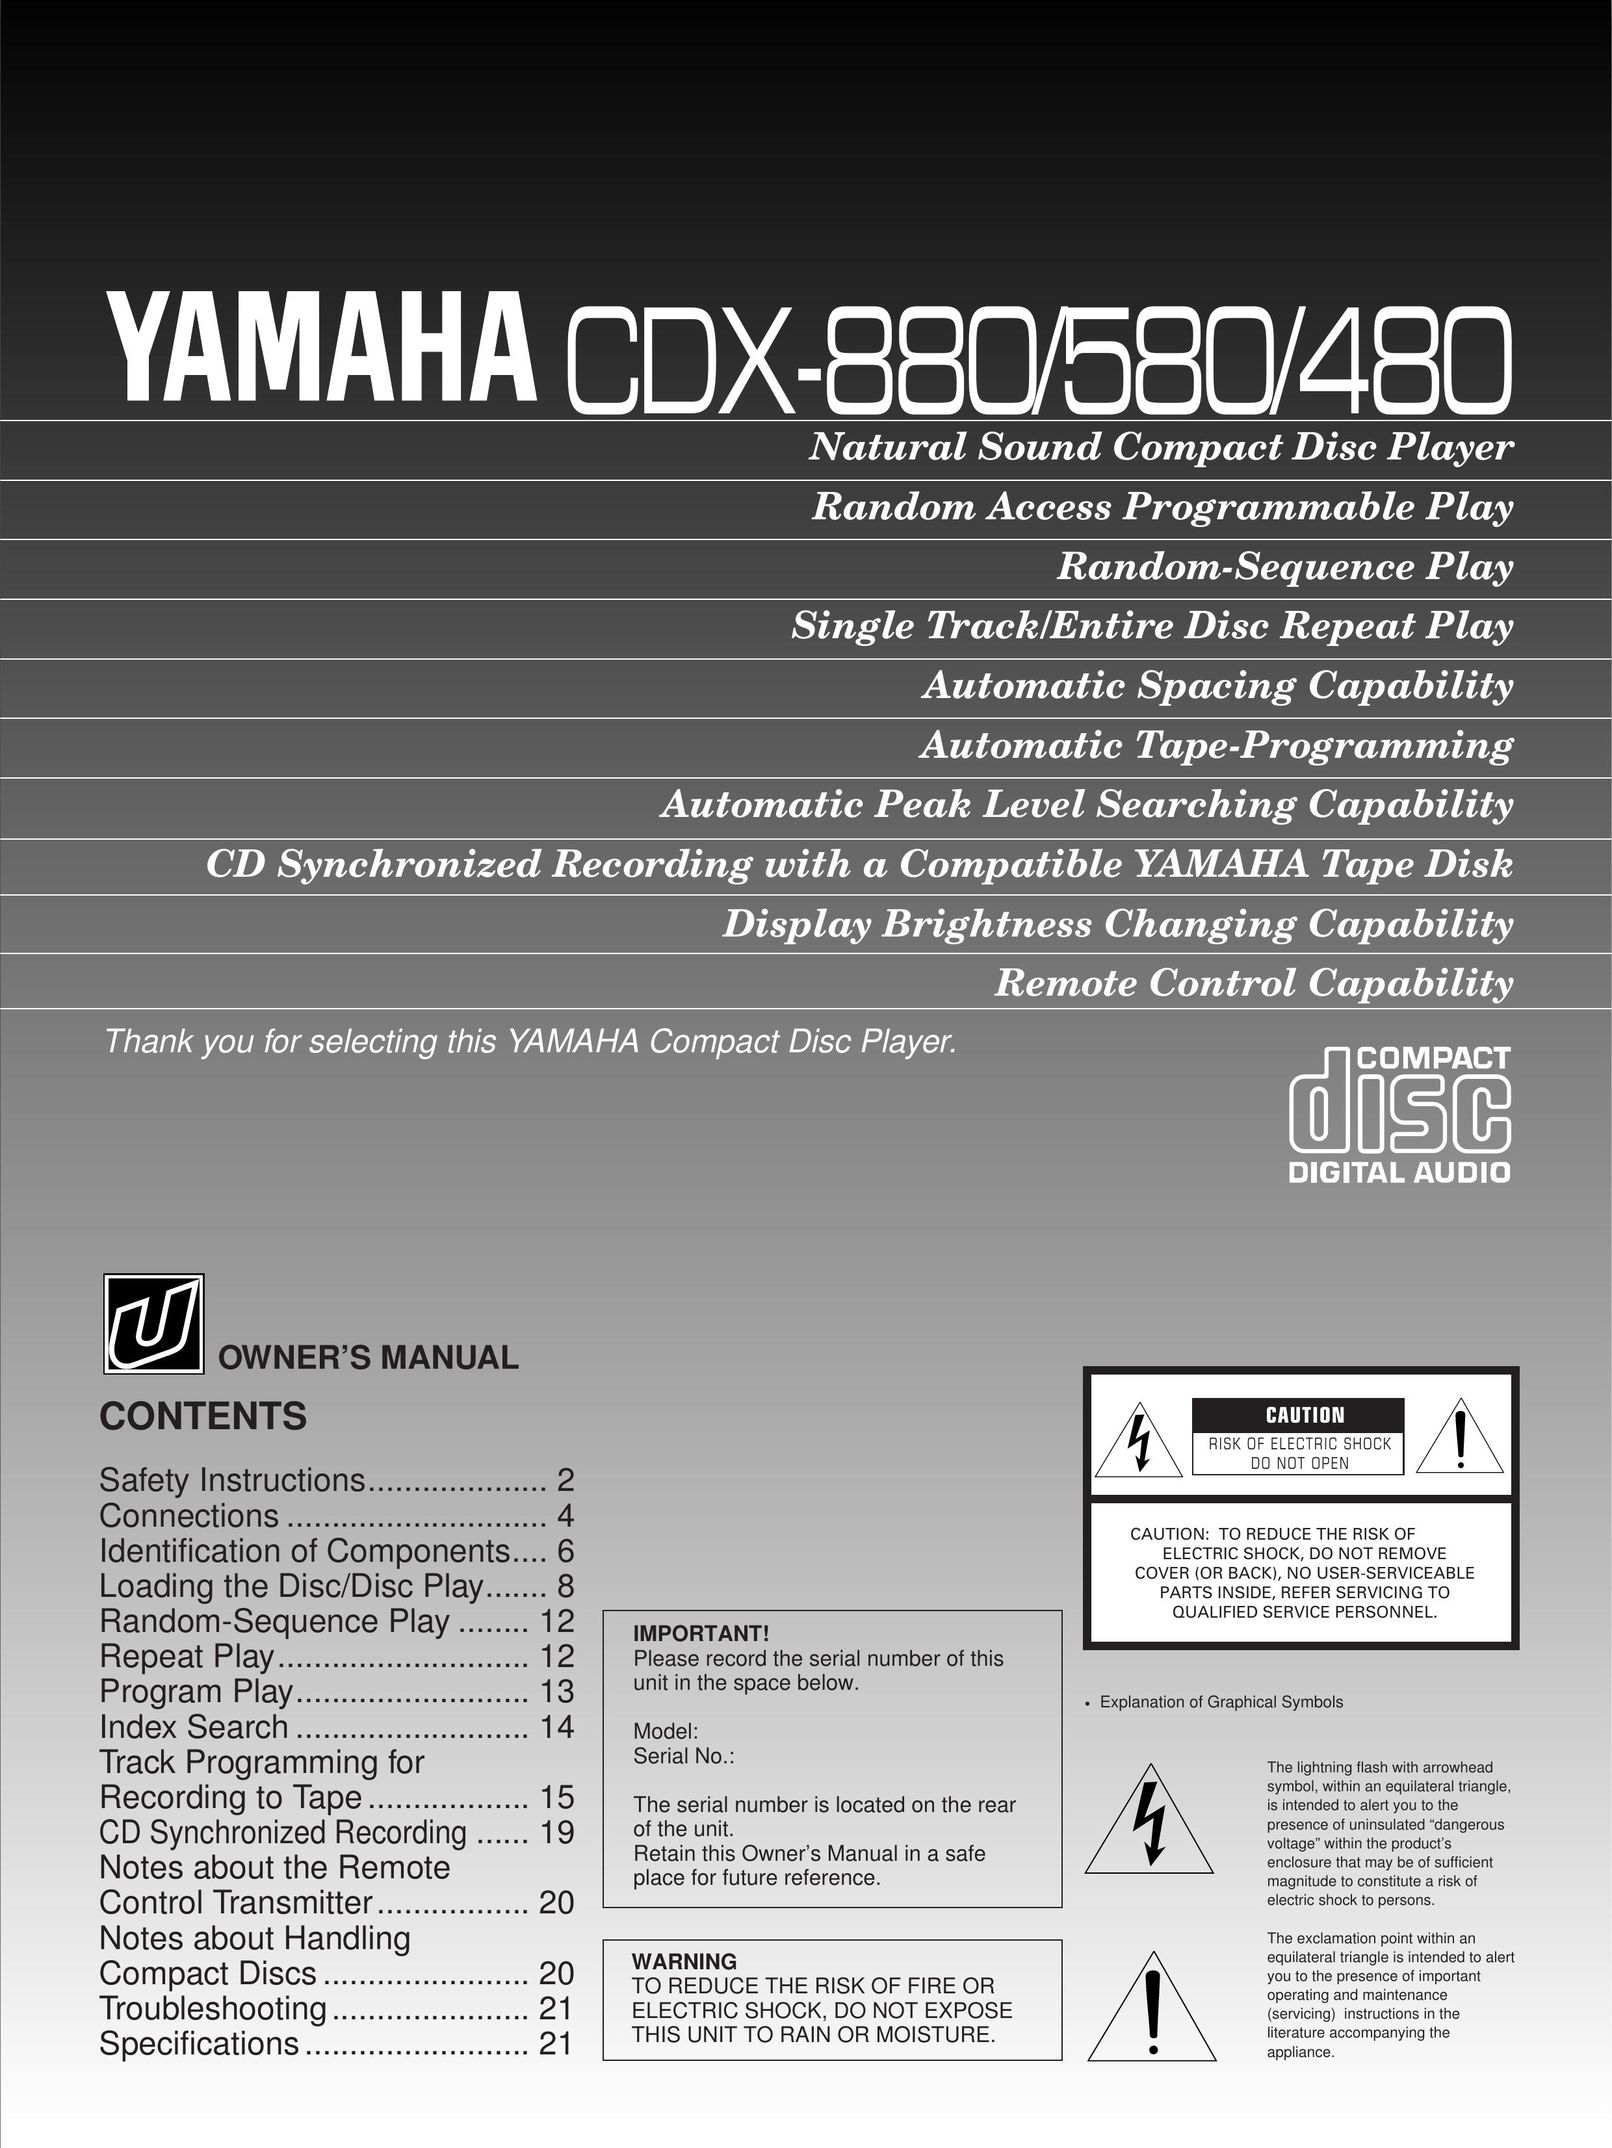 Yamaha CDX-880 CD Player User Manual